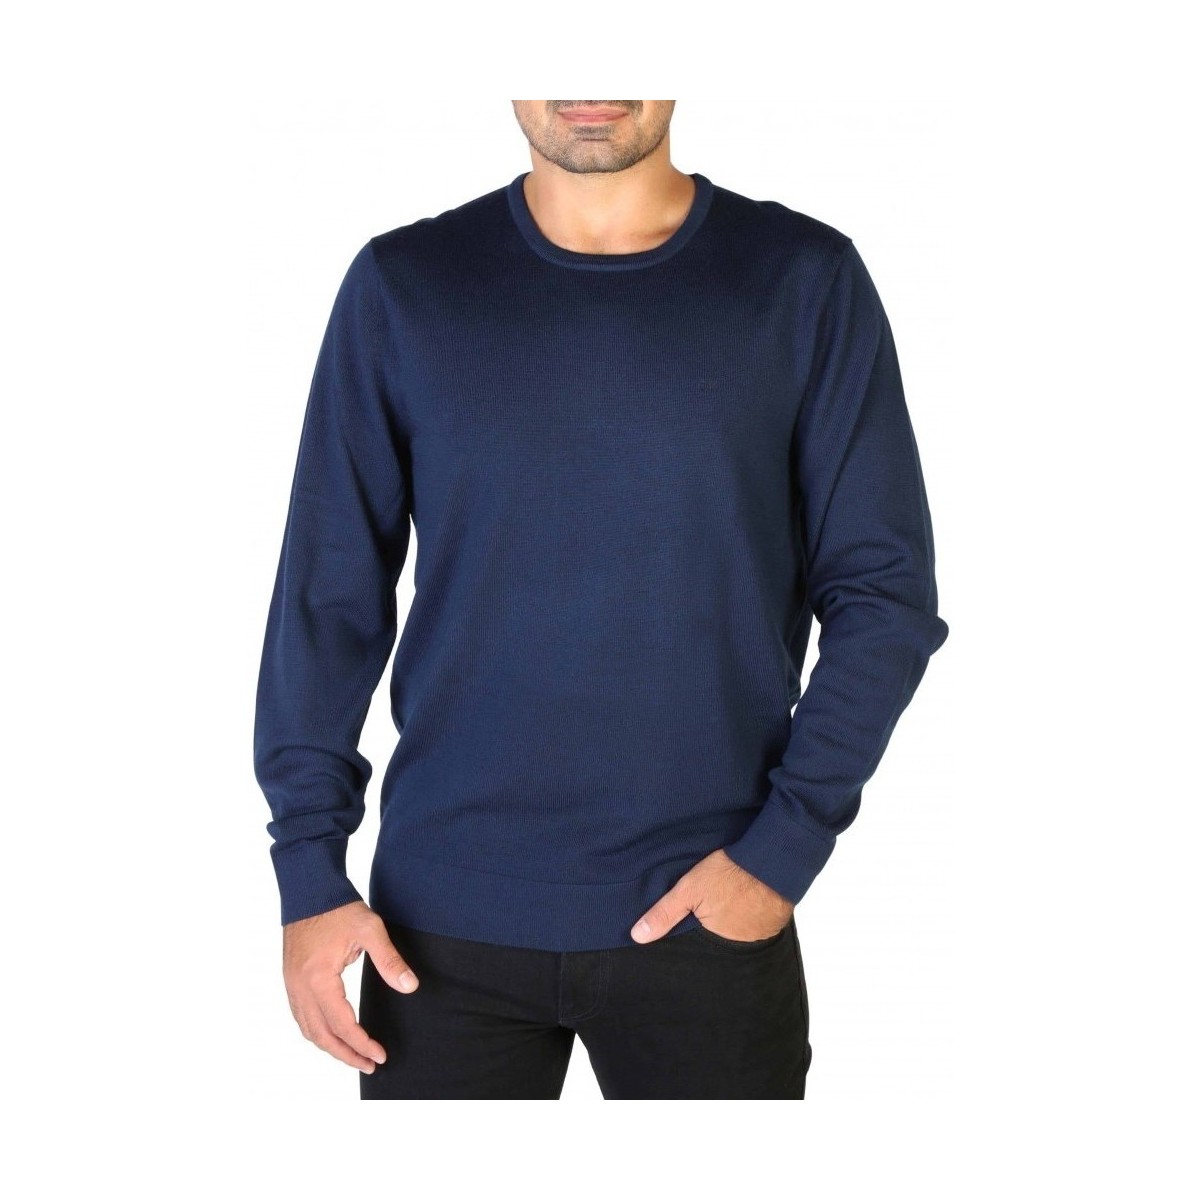 Kleidung Herren Pullover Calvin Klein Jeans K10K109474 Blau